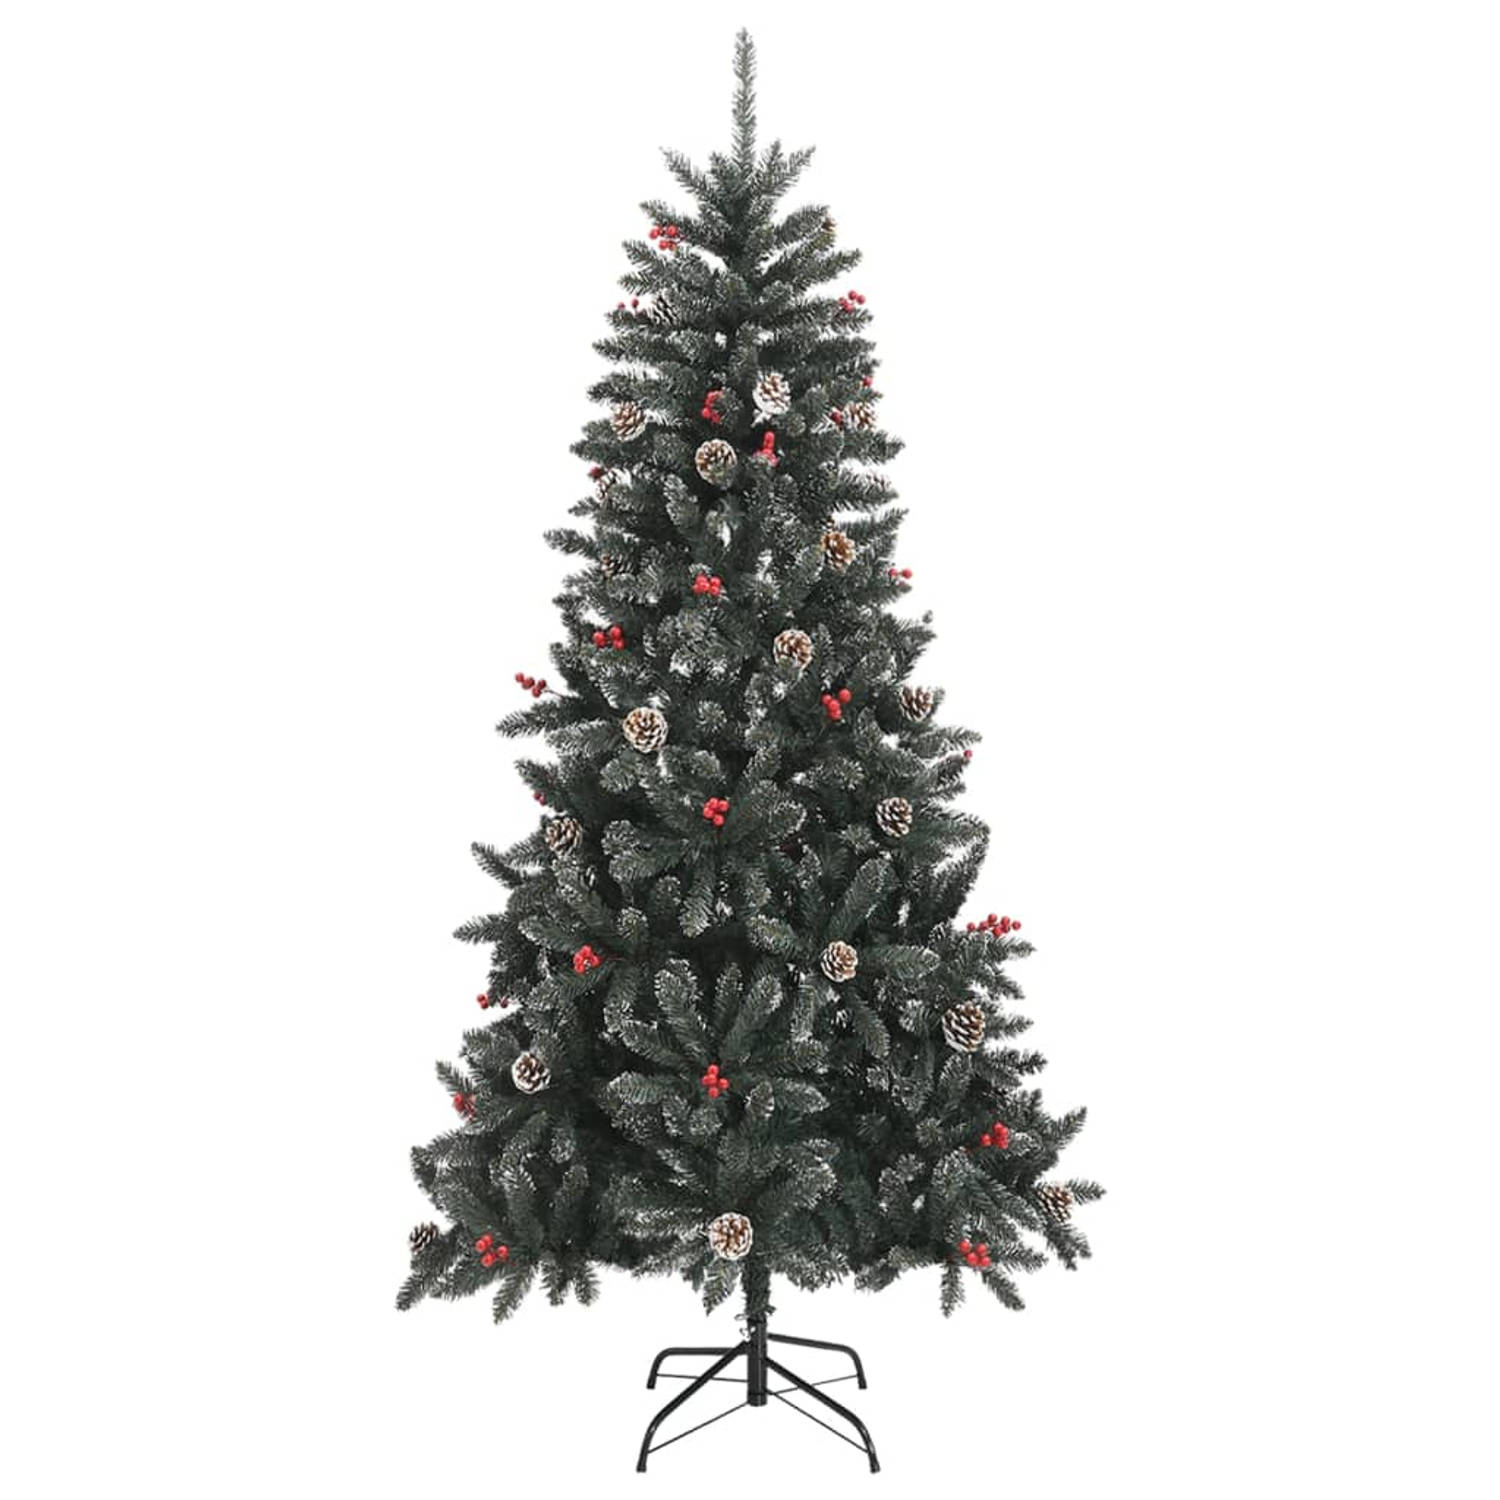 The Living Store Kunstkerstboom met standaard 210 cm PVC groen - Decoratieve kerstboom